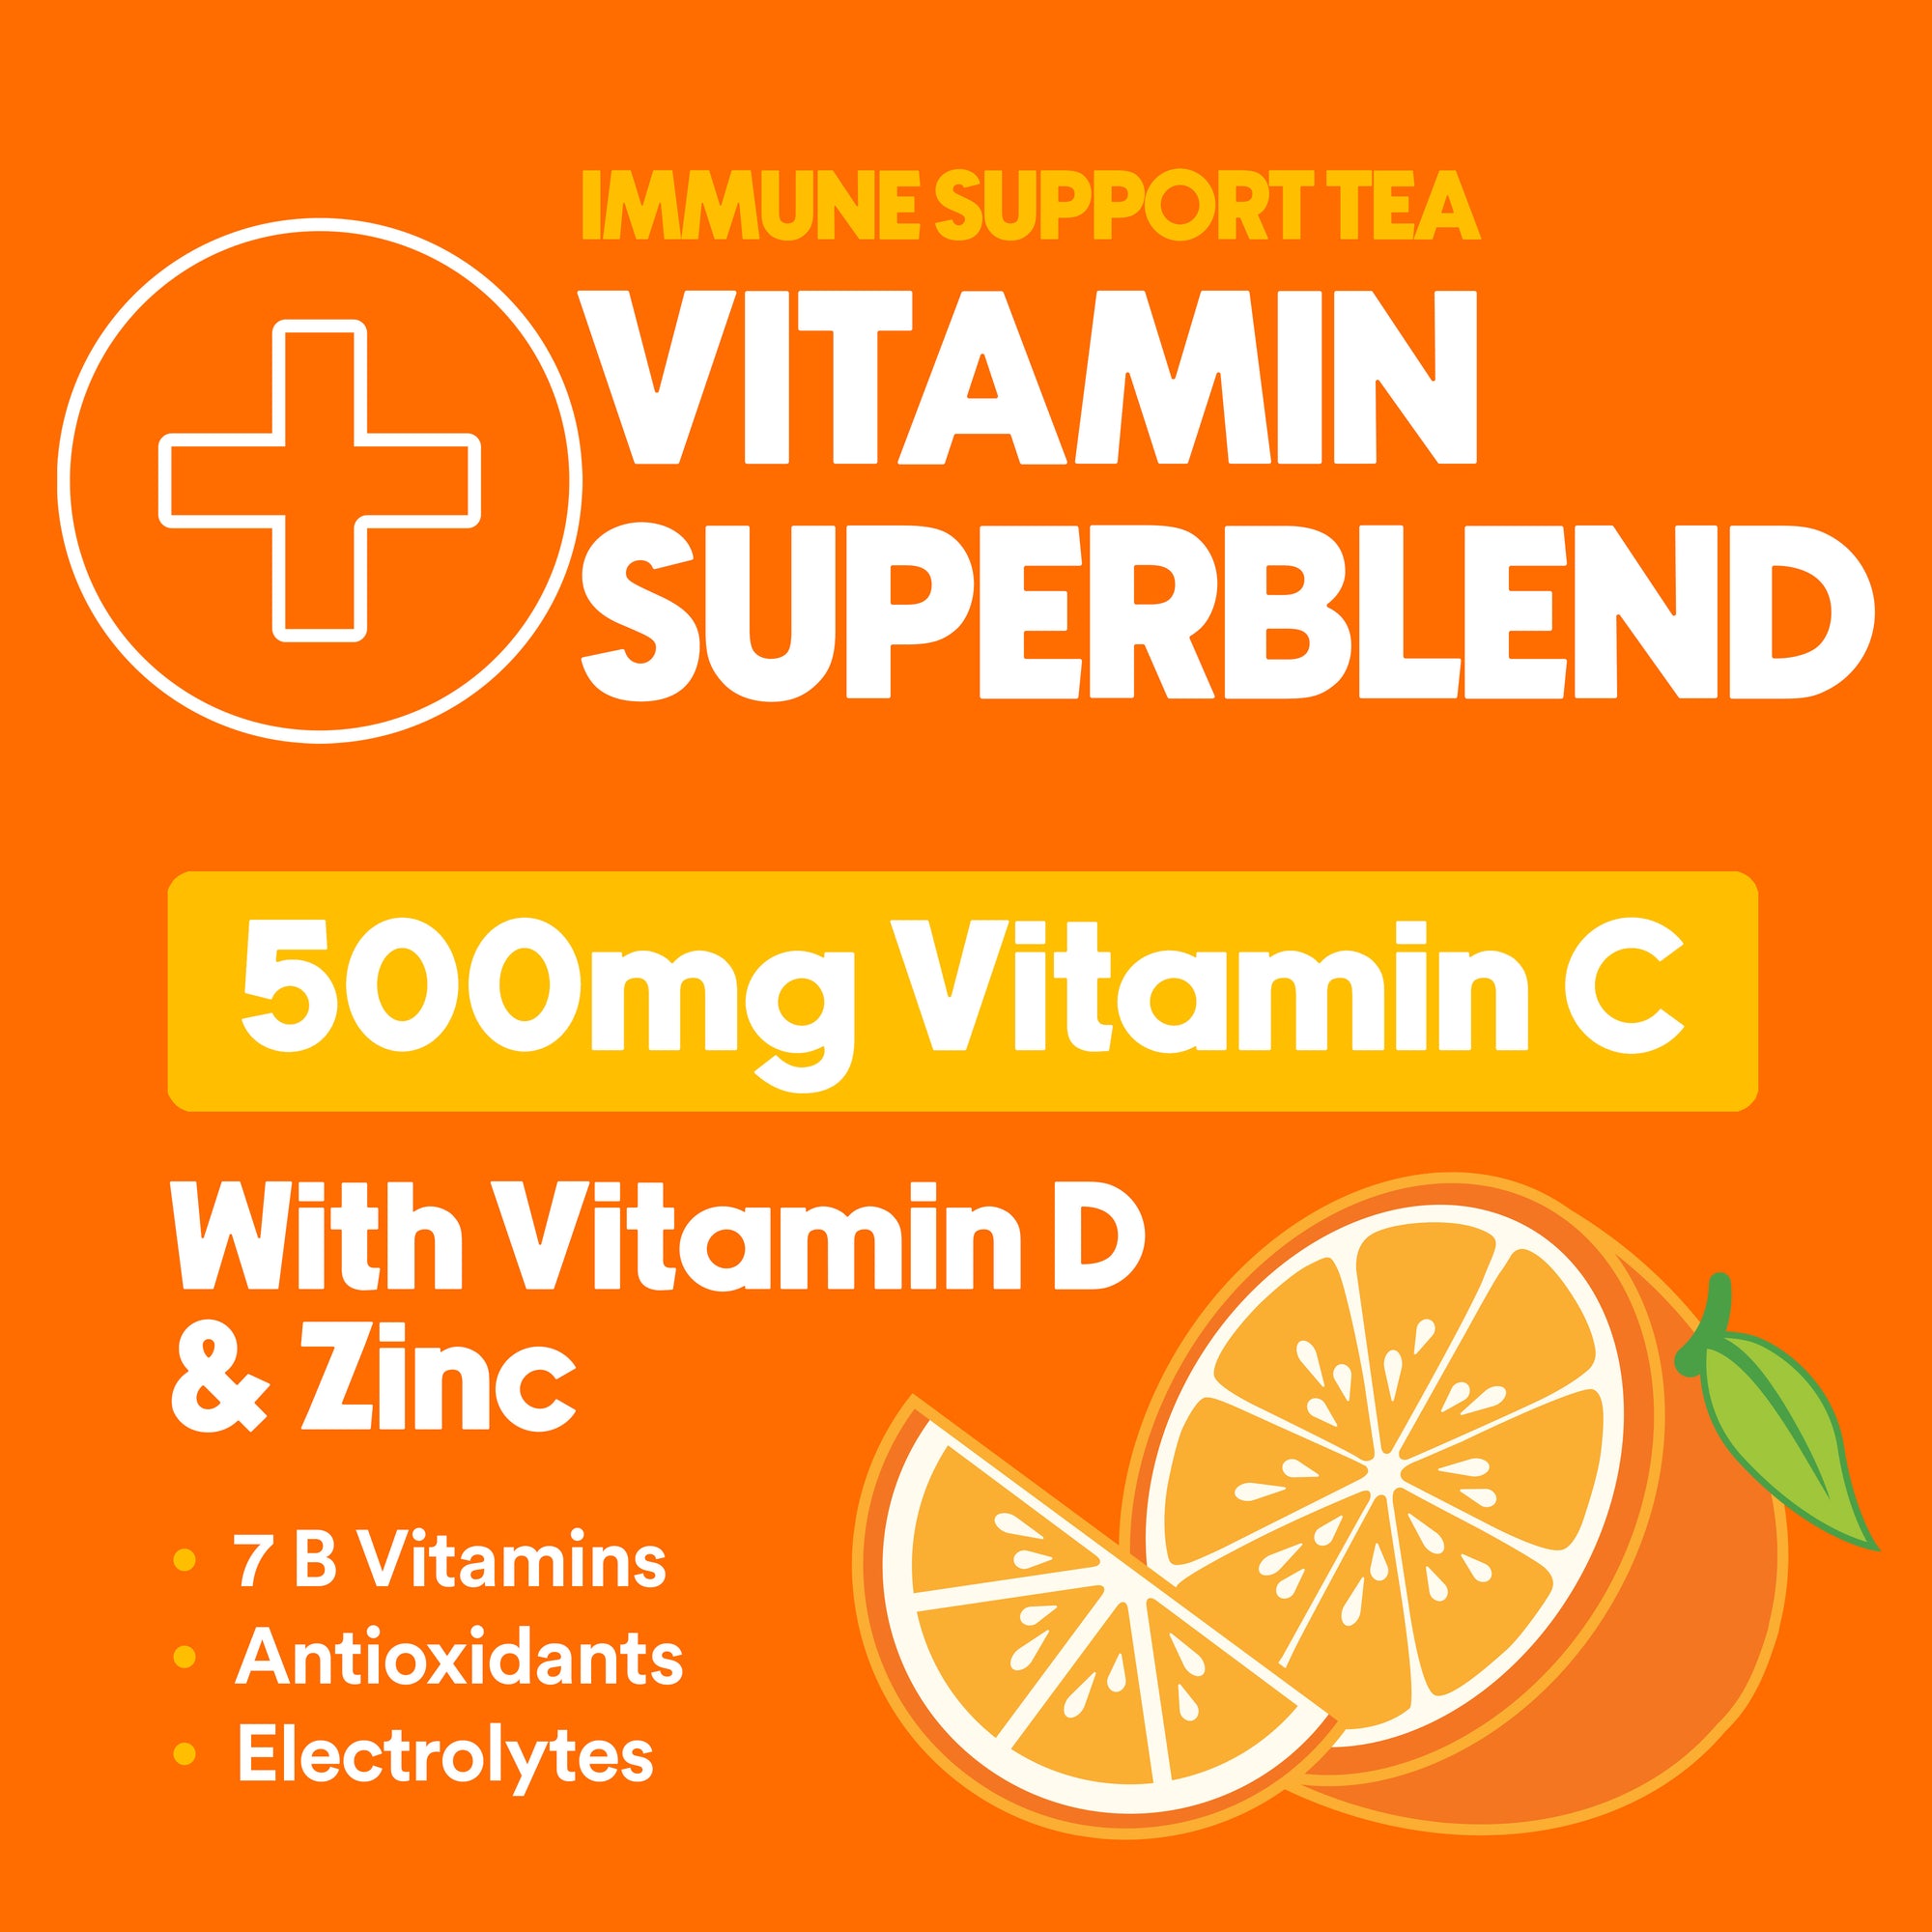 Immune Support Juicy Orange 12 Pack